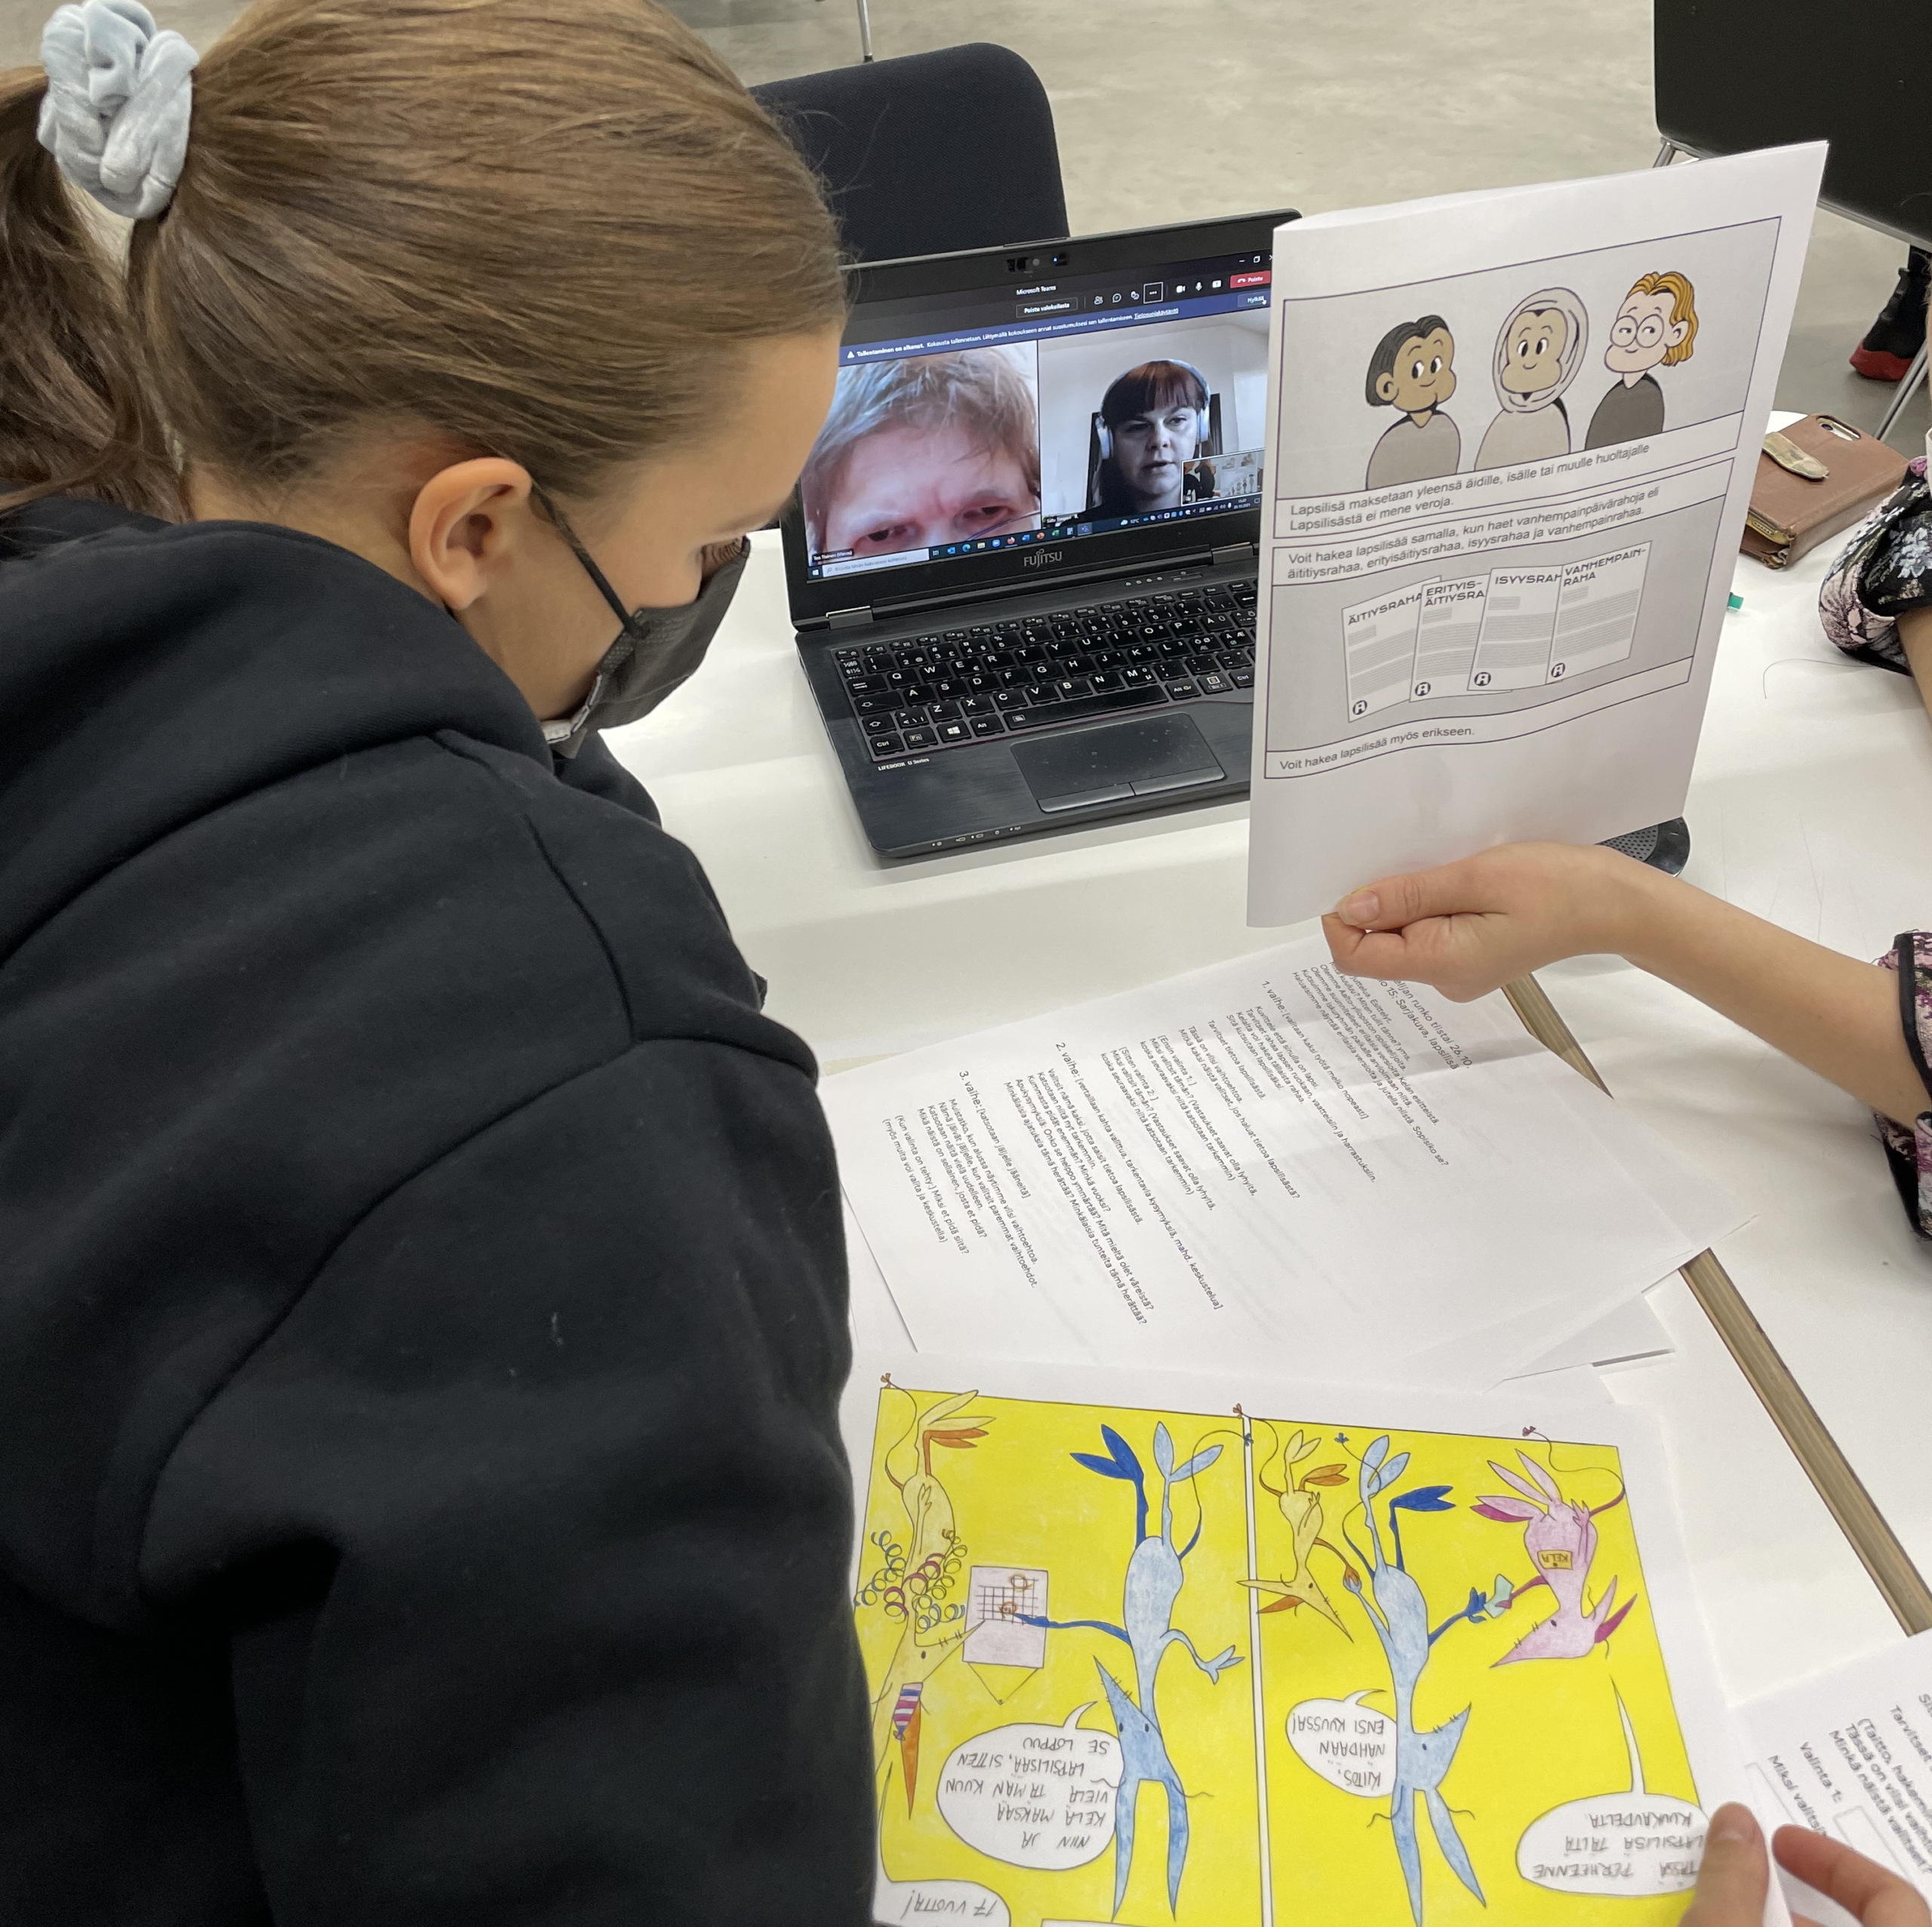 Yksi opiskelija näyttää Teams-kokouksessa olevalle henkilölle sarjakuvaa, toinen opiskelija seuraa sivusta. Kuvassa näkyy myös sarjakuva, jossa hahmot ovat eläimiä.